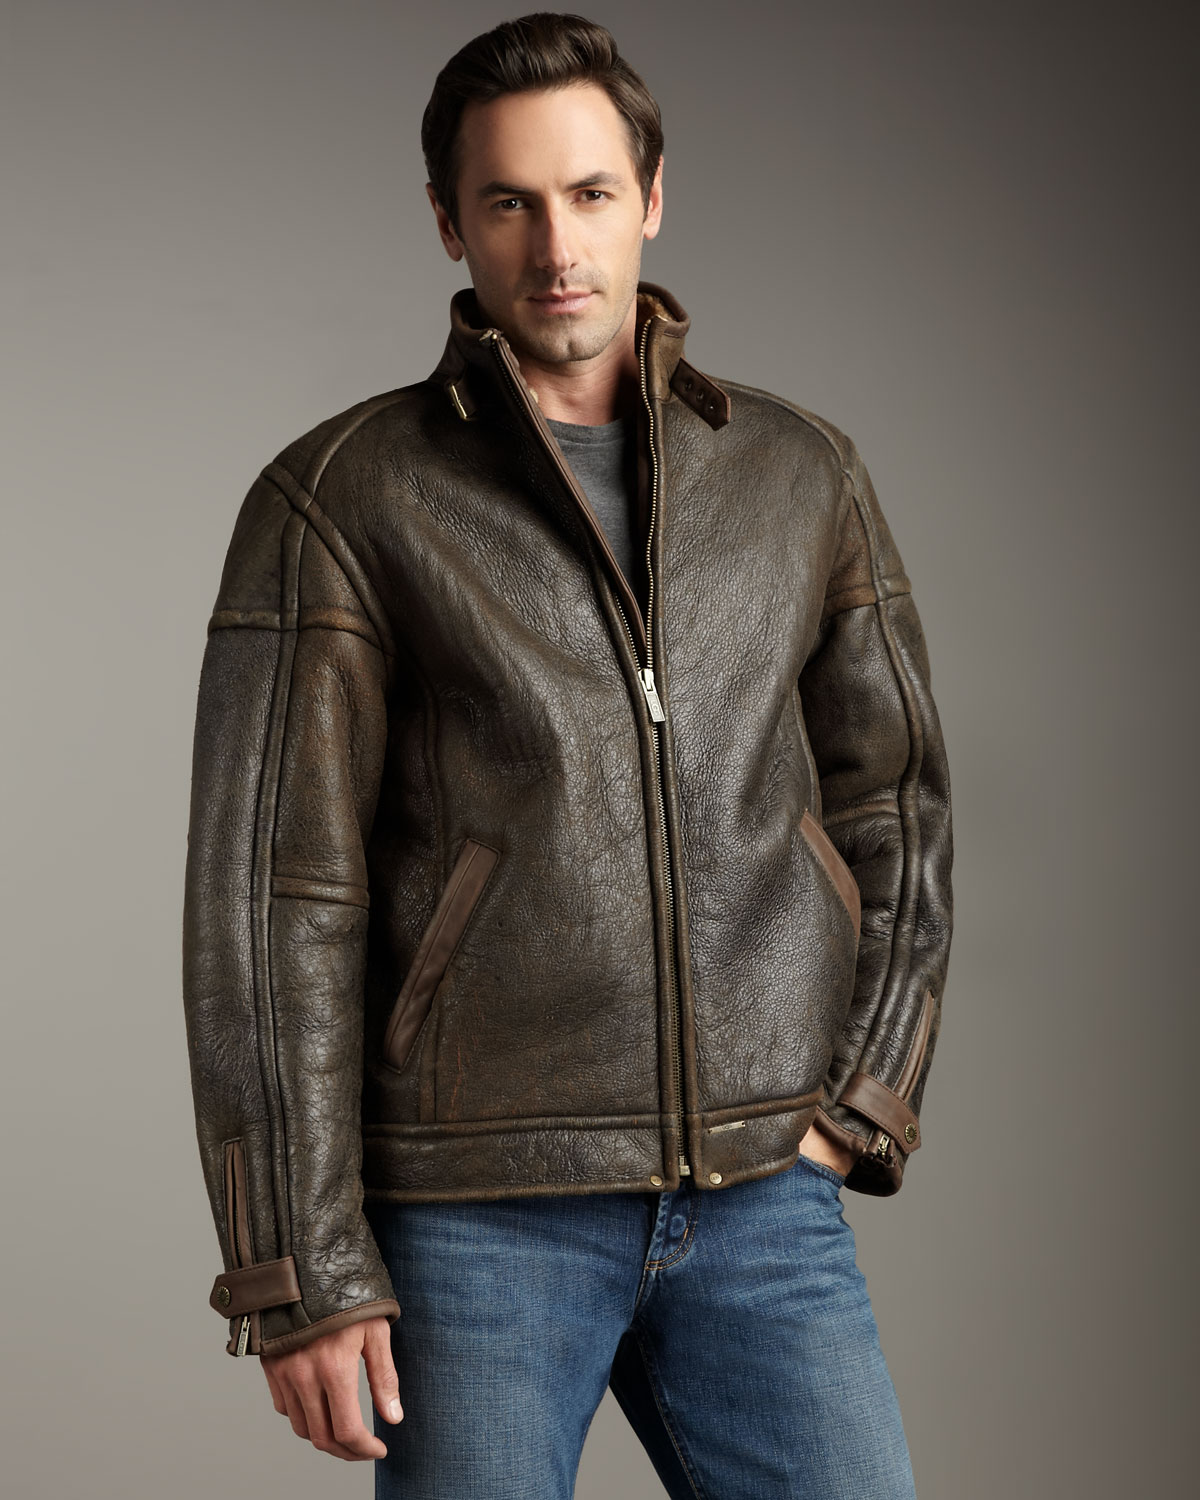 ugg leather jacket mens off 59% - www.intolegalworld.com